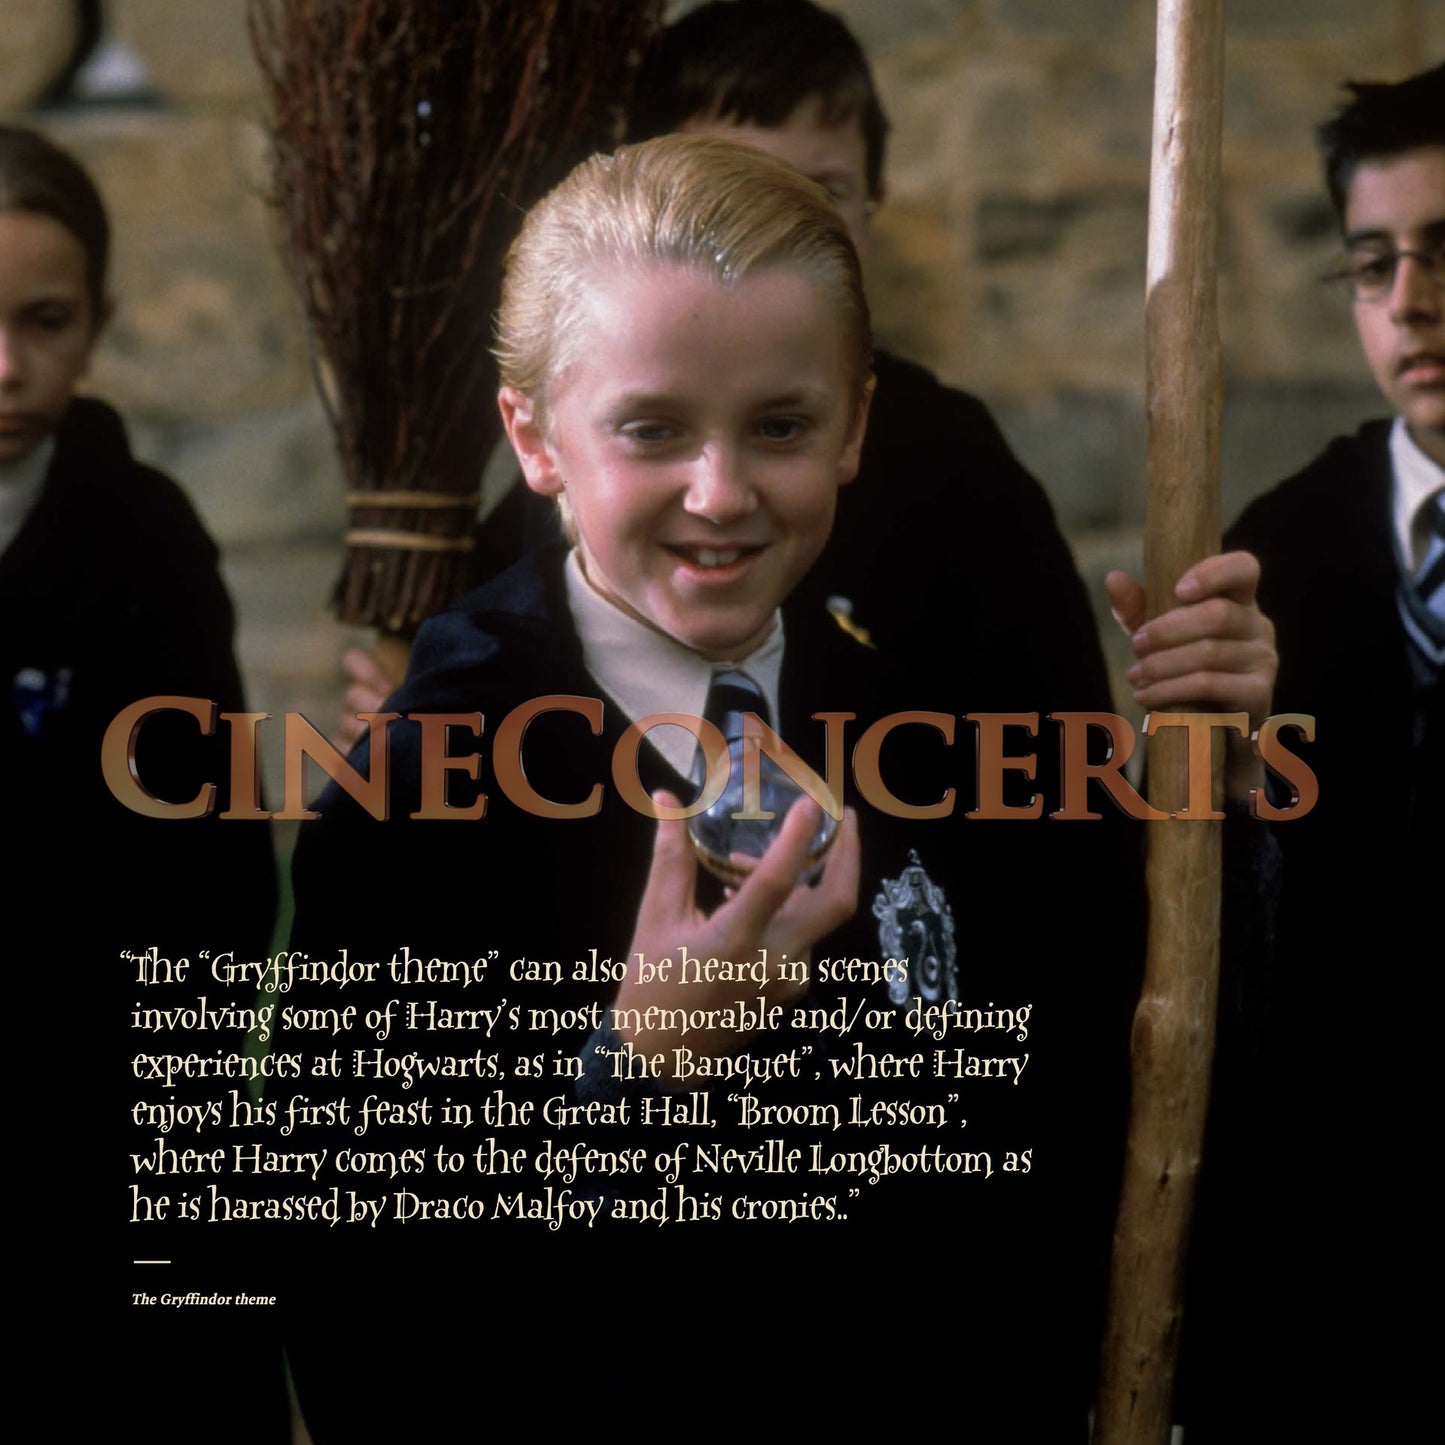 Harry Potter und der Stein der Weisen in Concert Souvenir Program